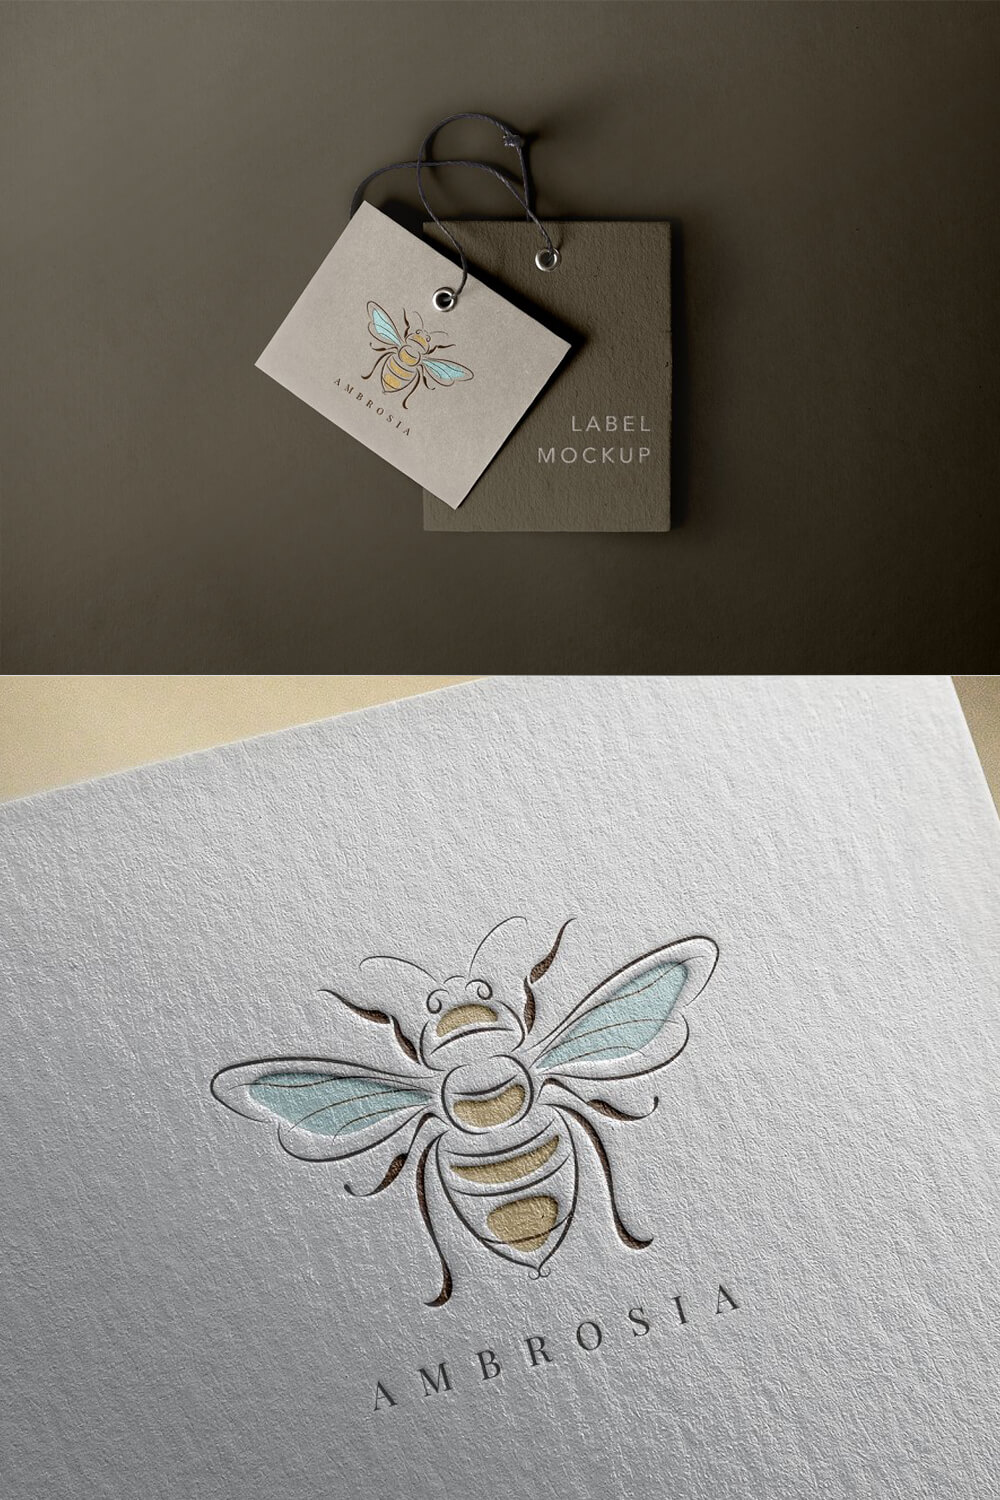 Label mockup Ambrosia with image bee.